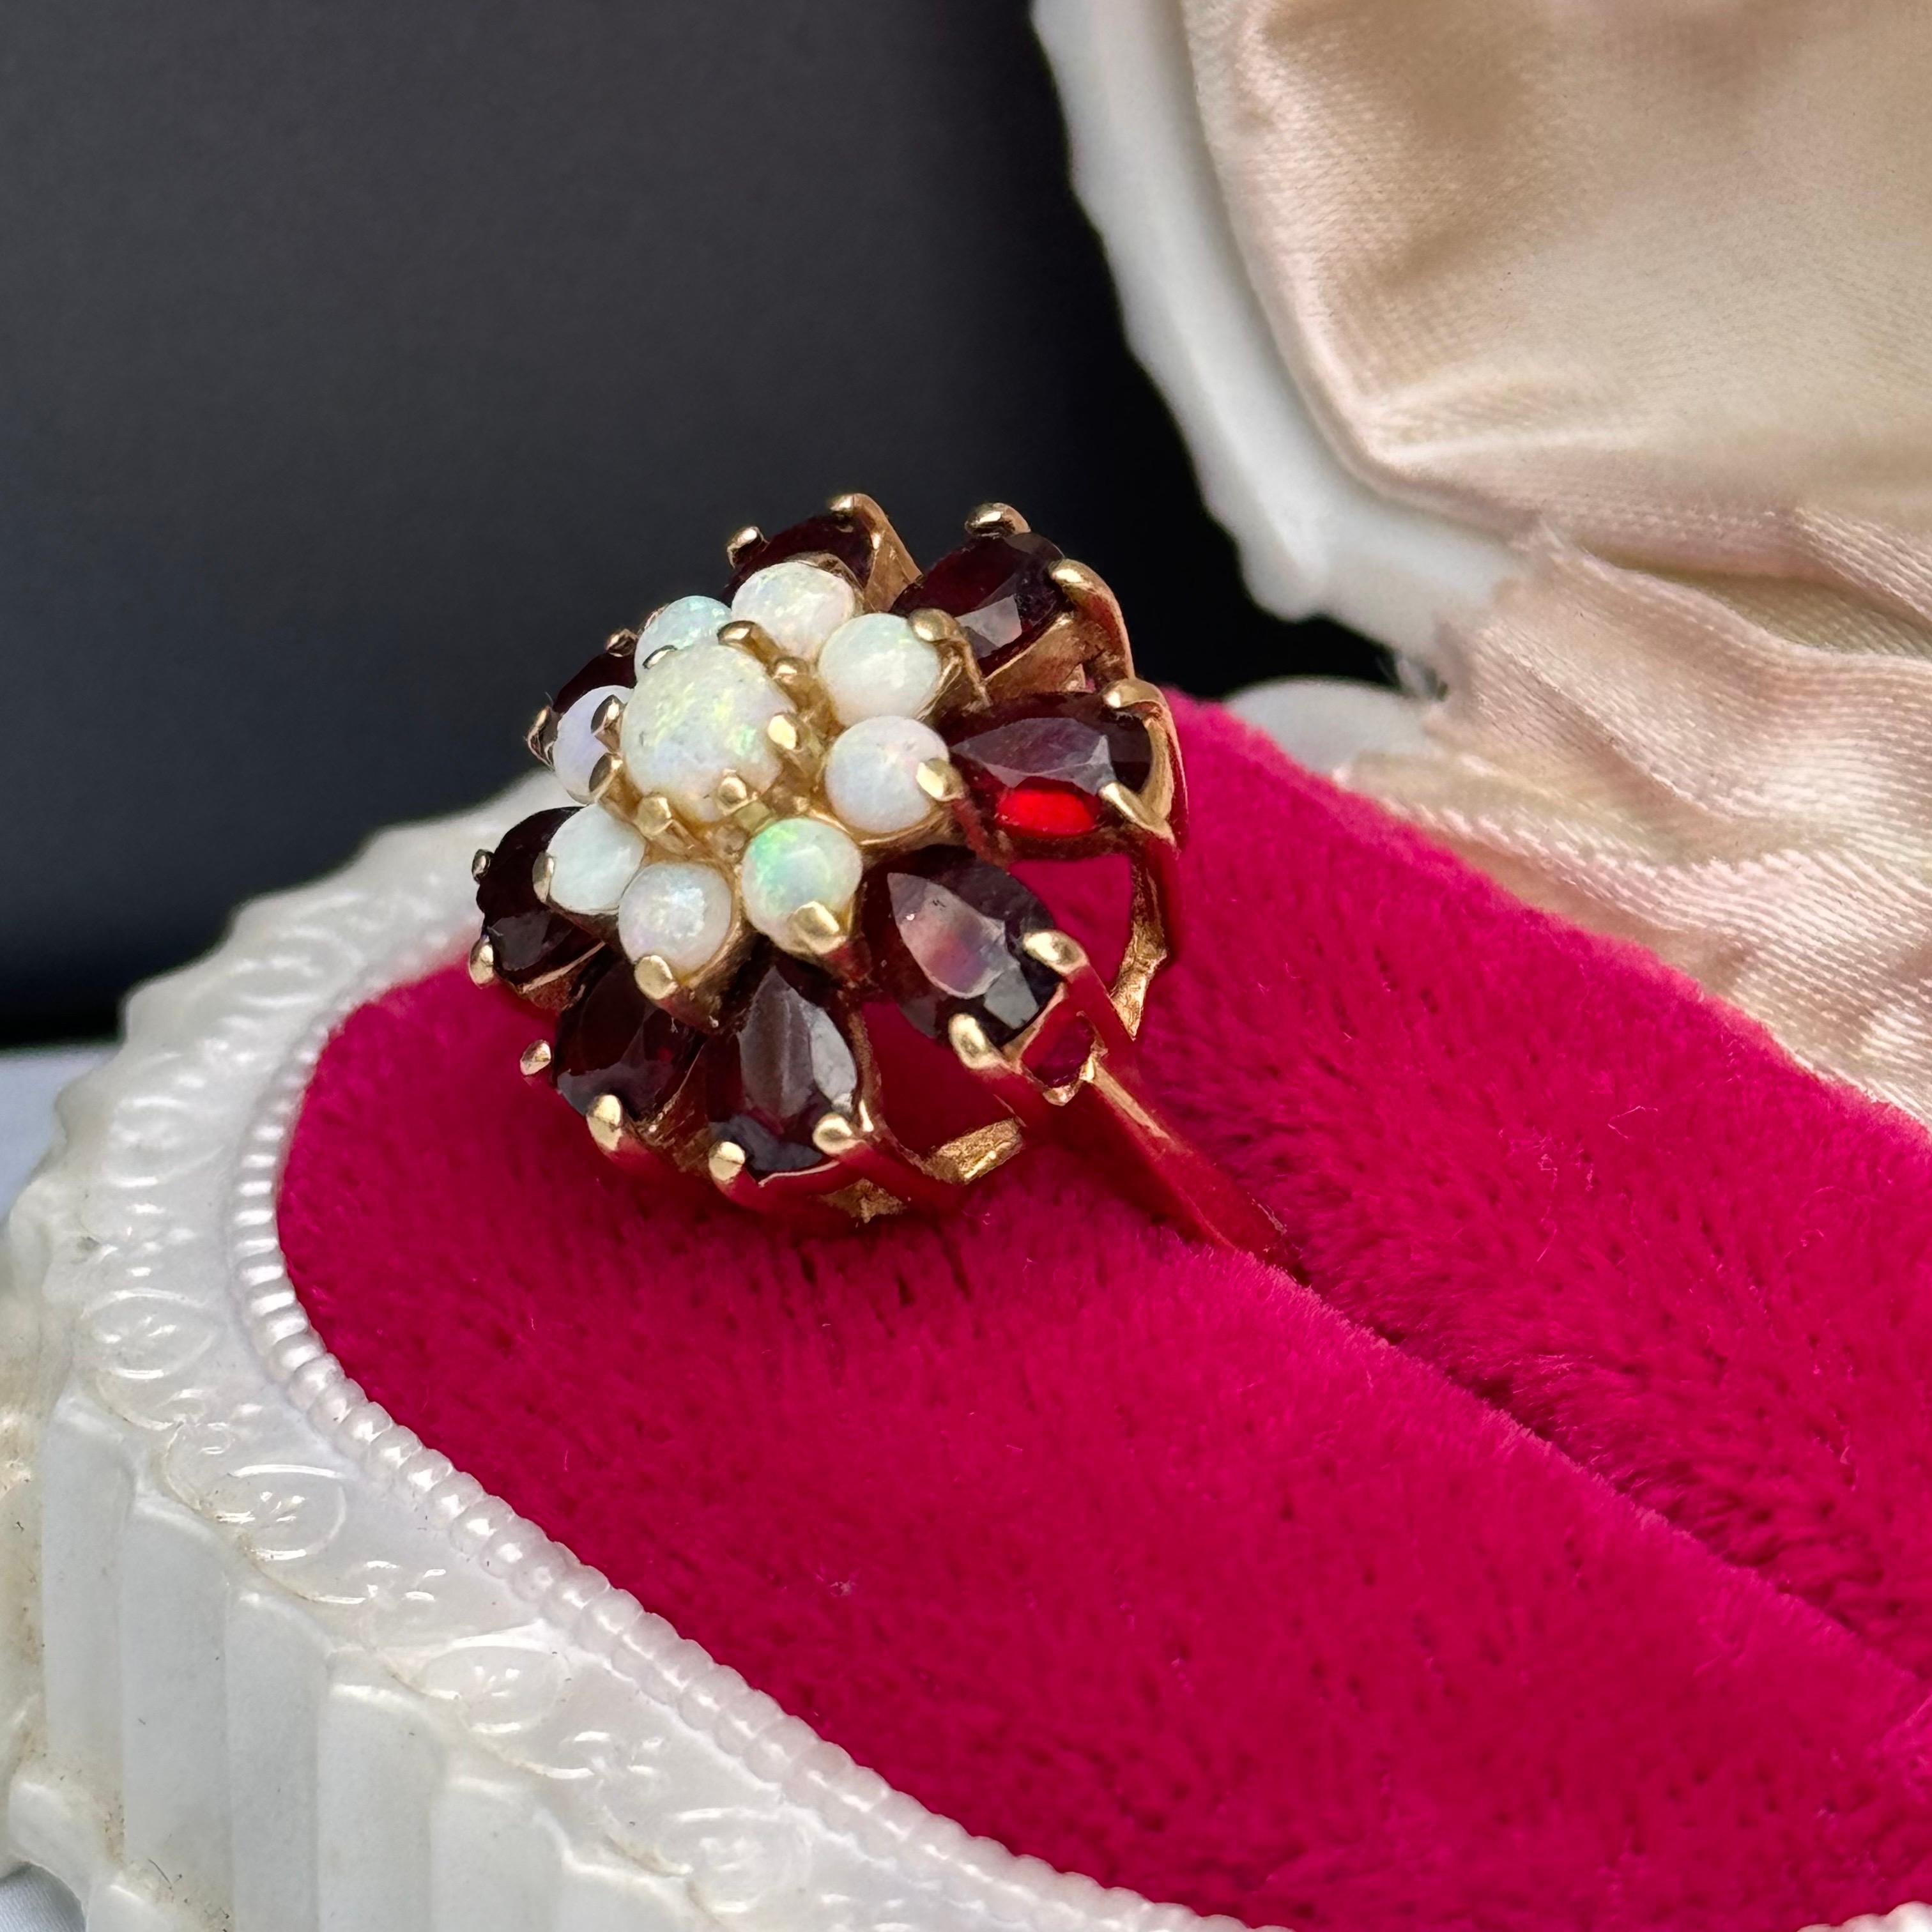 Vintage  Victorian Revival Opal Garnet Cluster Cocktail Ring in 14kt Gold, un hommage étonnant à l'élégance de l'ère victorienne. Cette bague exquise présente une grappe d'opales et de grenats sertis dans un luxueux or 14kt, évoquant l'opulence et